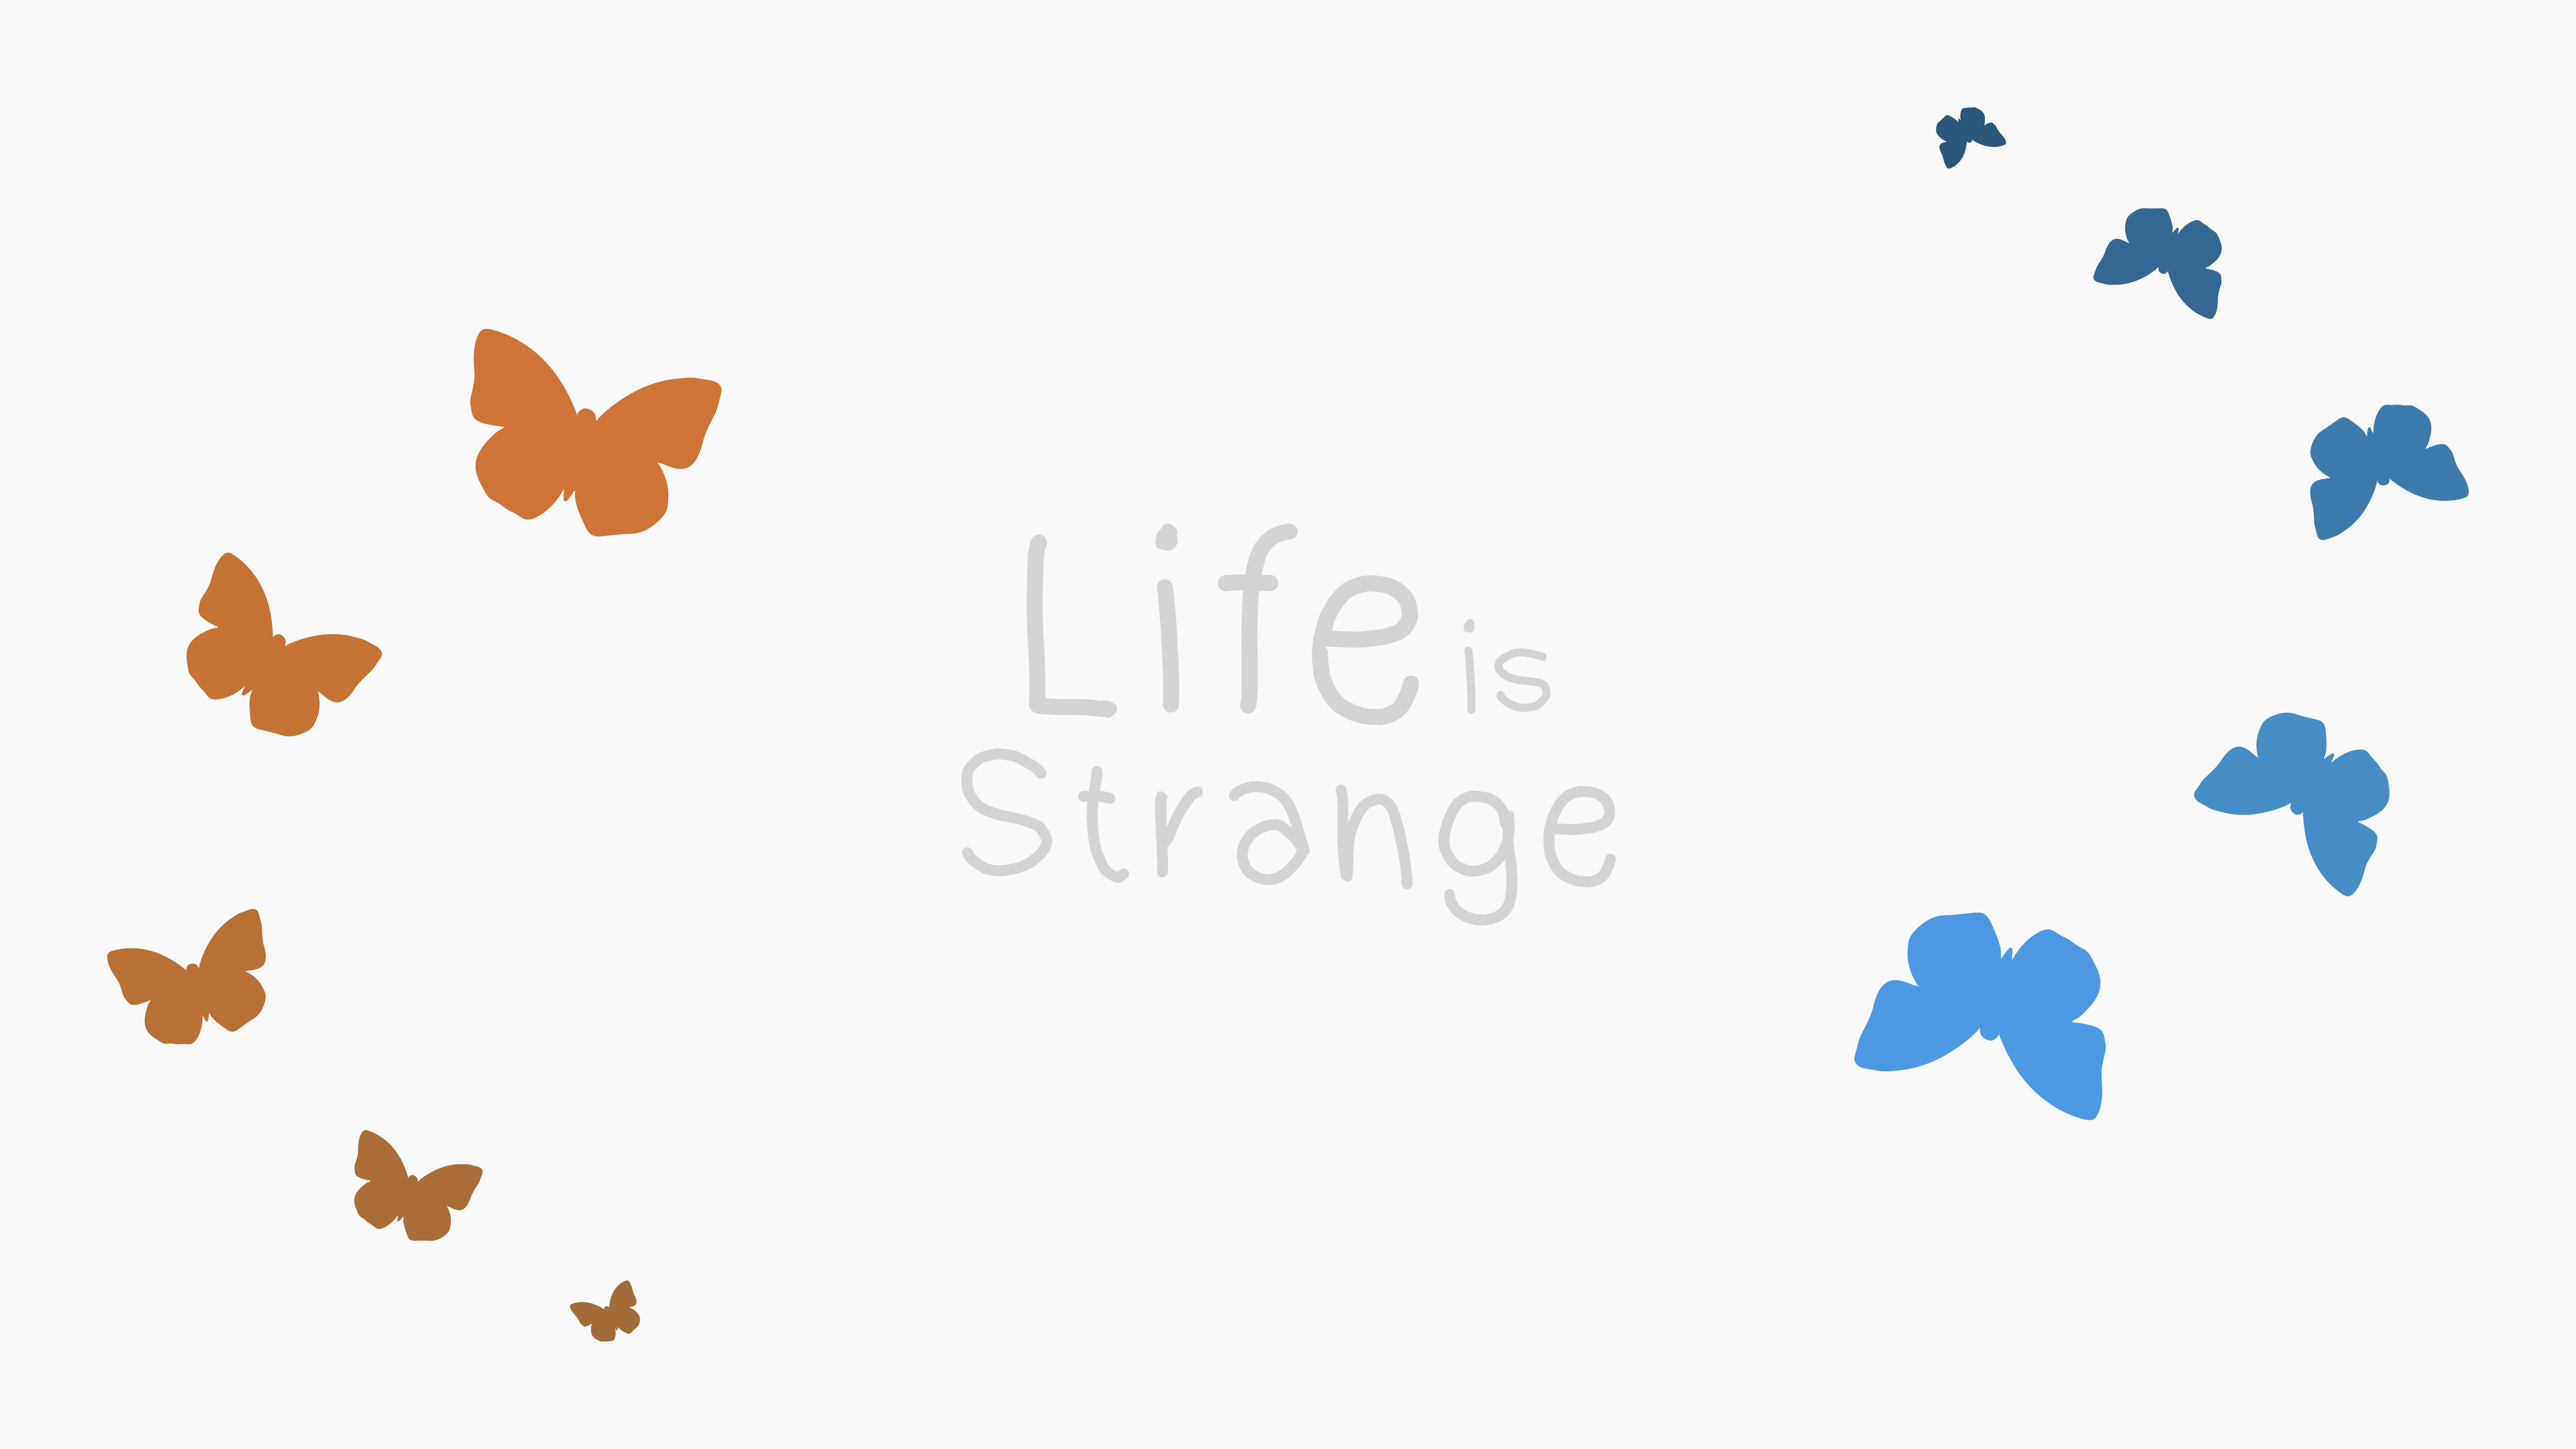 Life is life download. Life is Strange бабочка. Странные обои с бабочками. Обои бабочки Минимализм. Однотонные обои с бабочками с краю.